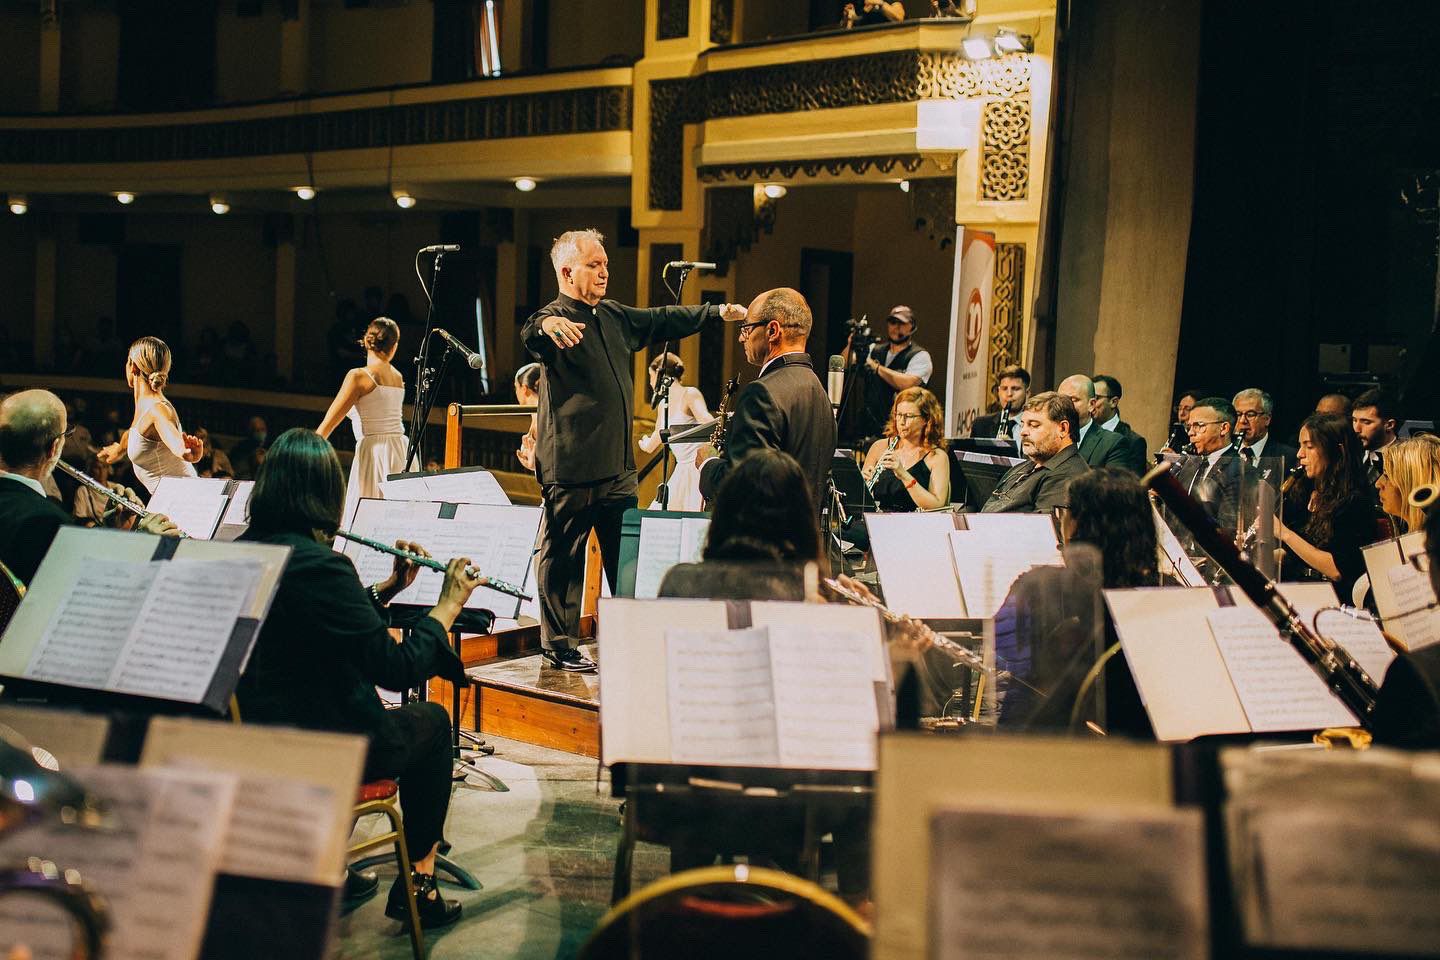 La Banda Sinfónica Municipal estrena “Planeta Música”, un ciclo de conciertos didácticos con enfoque ambiental